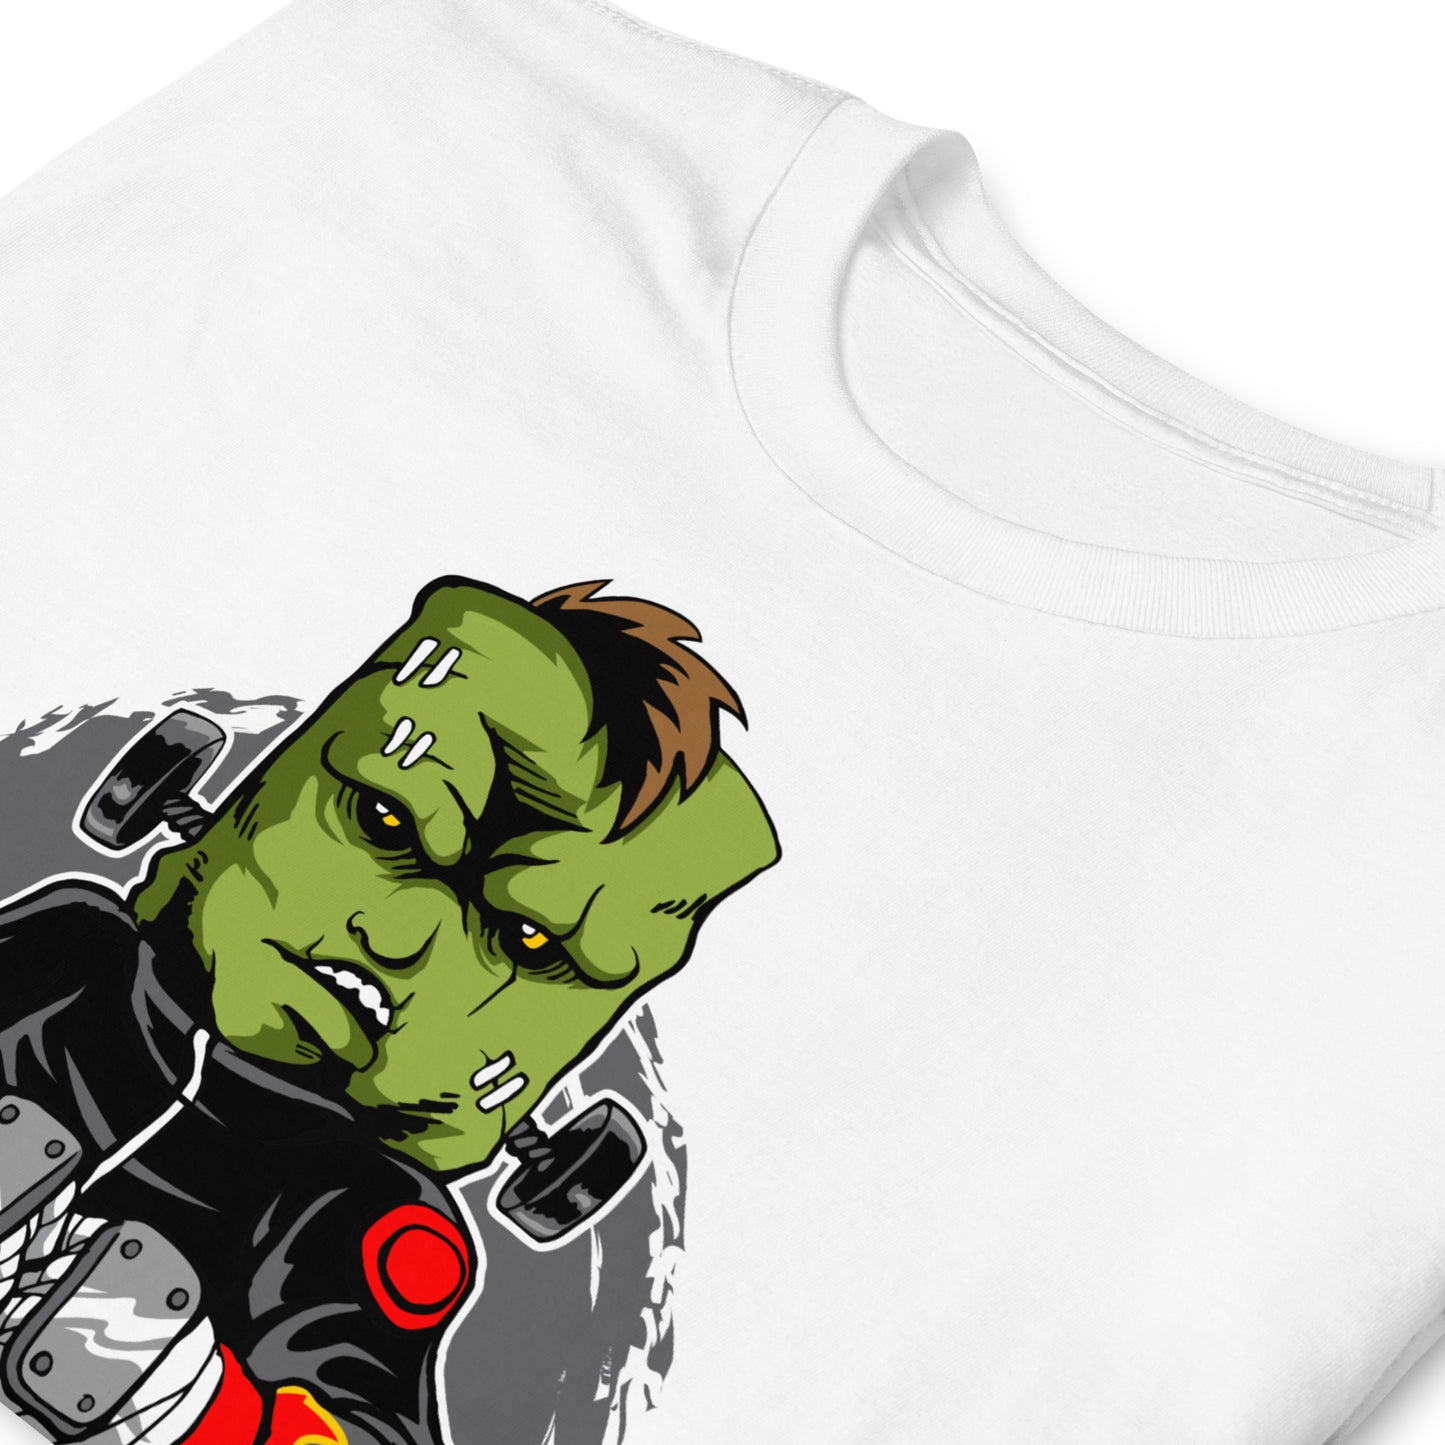 Frankenstein Halloween Unisex T-Shirt